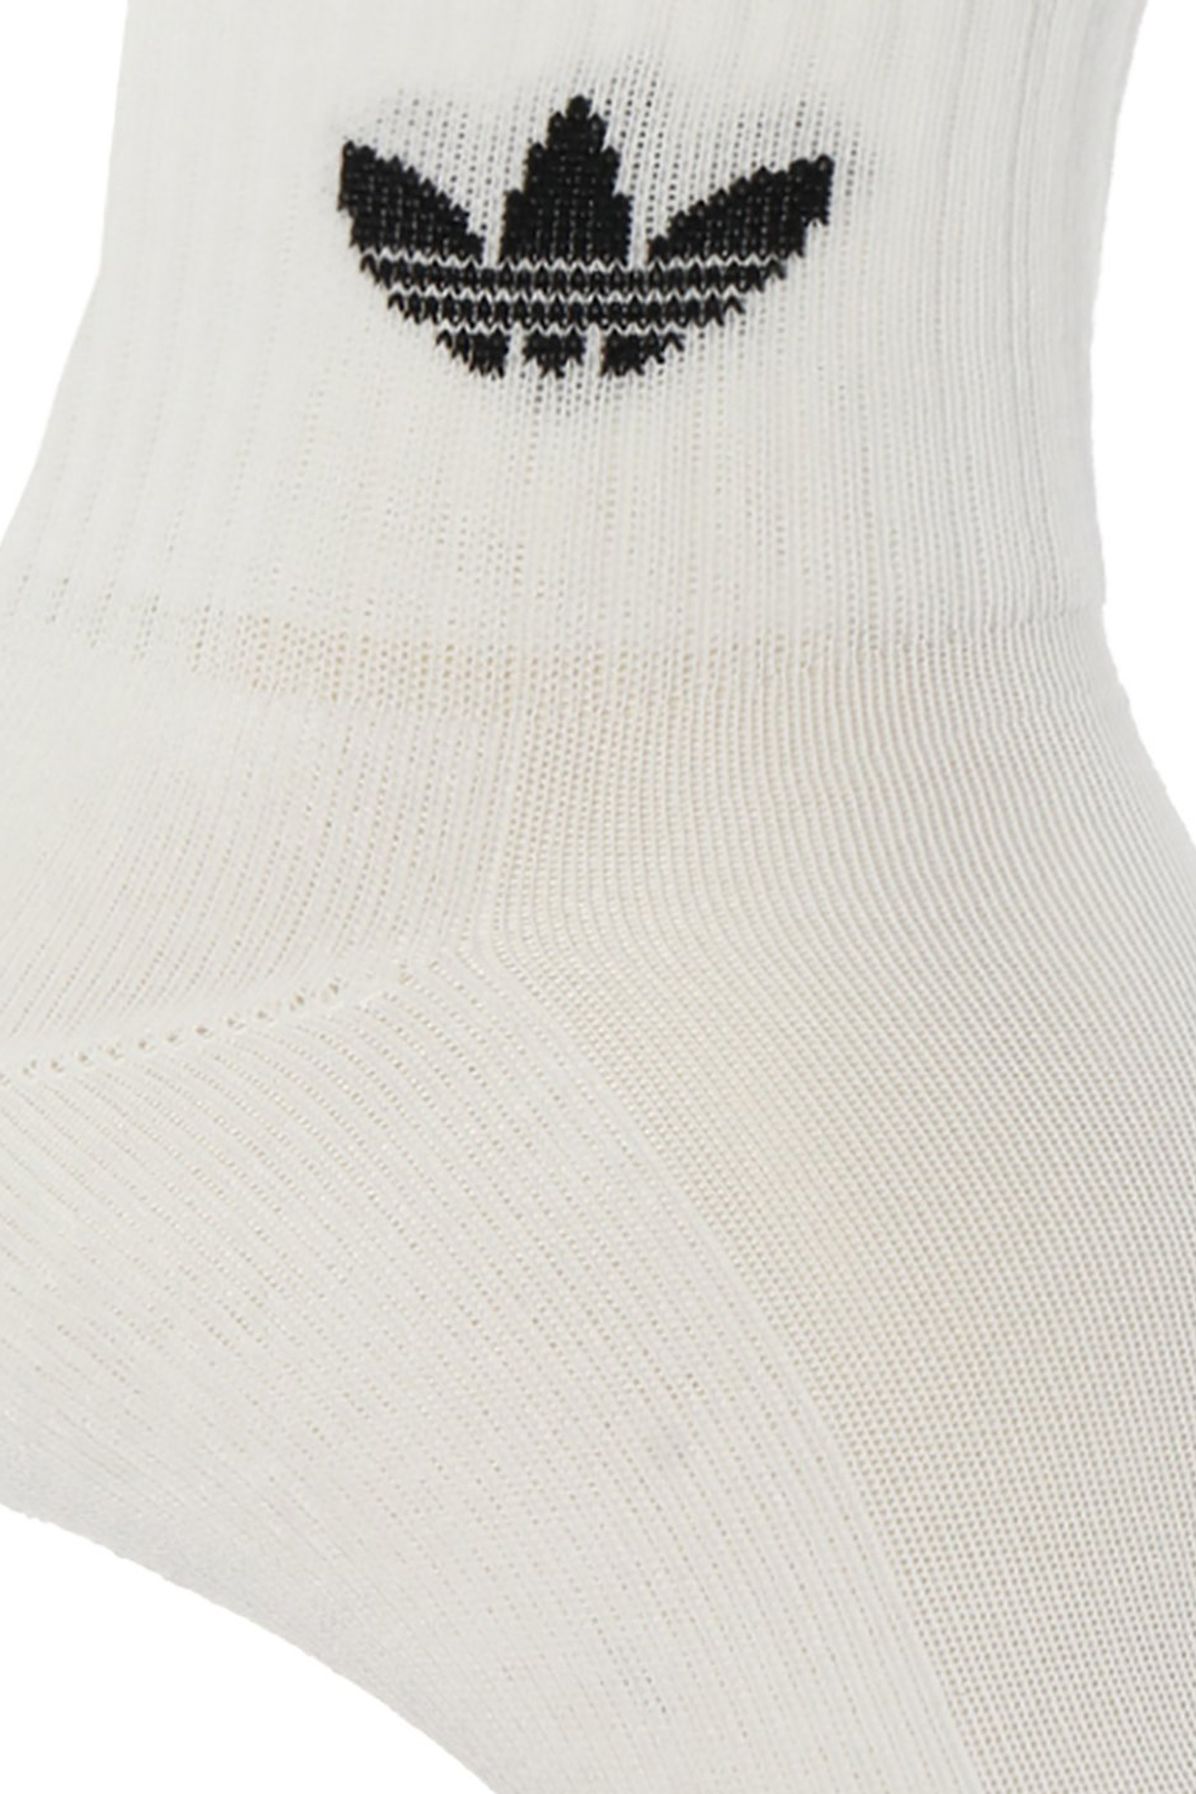 Adidas Originals Branded socks 3-pack